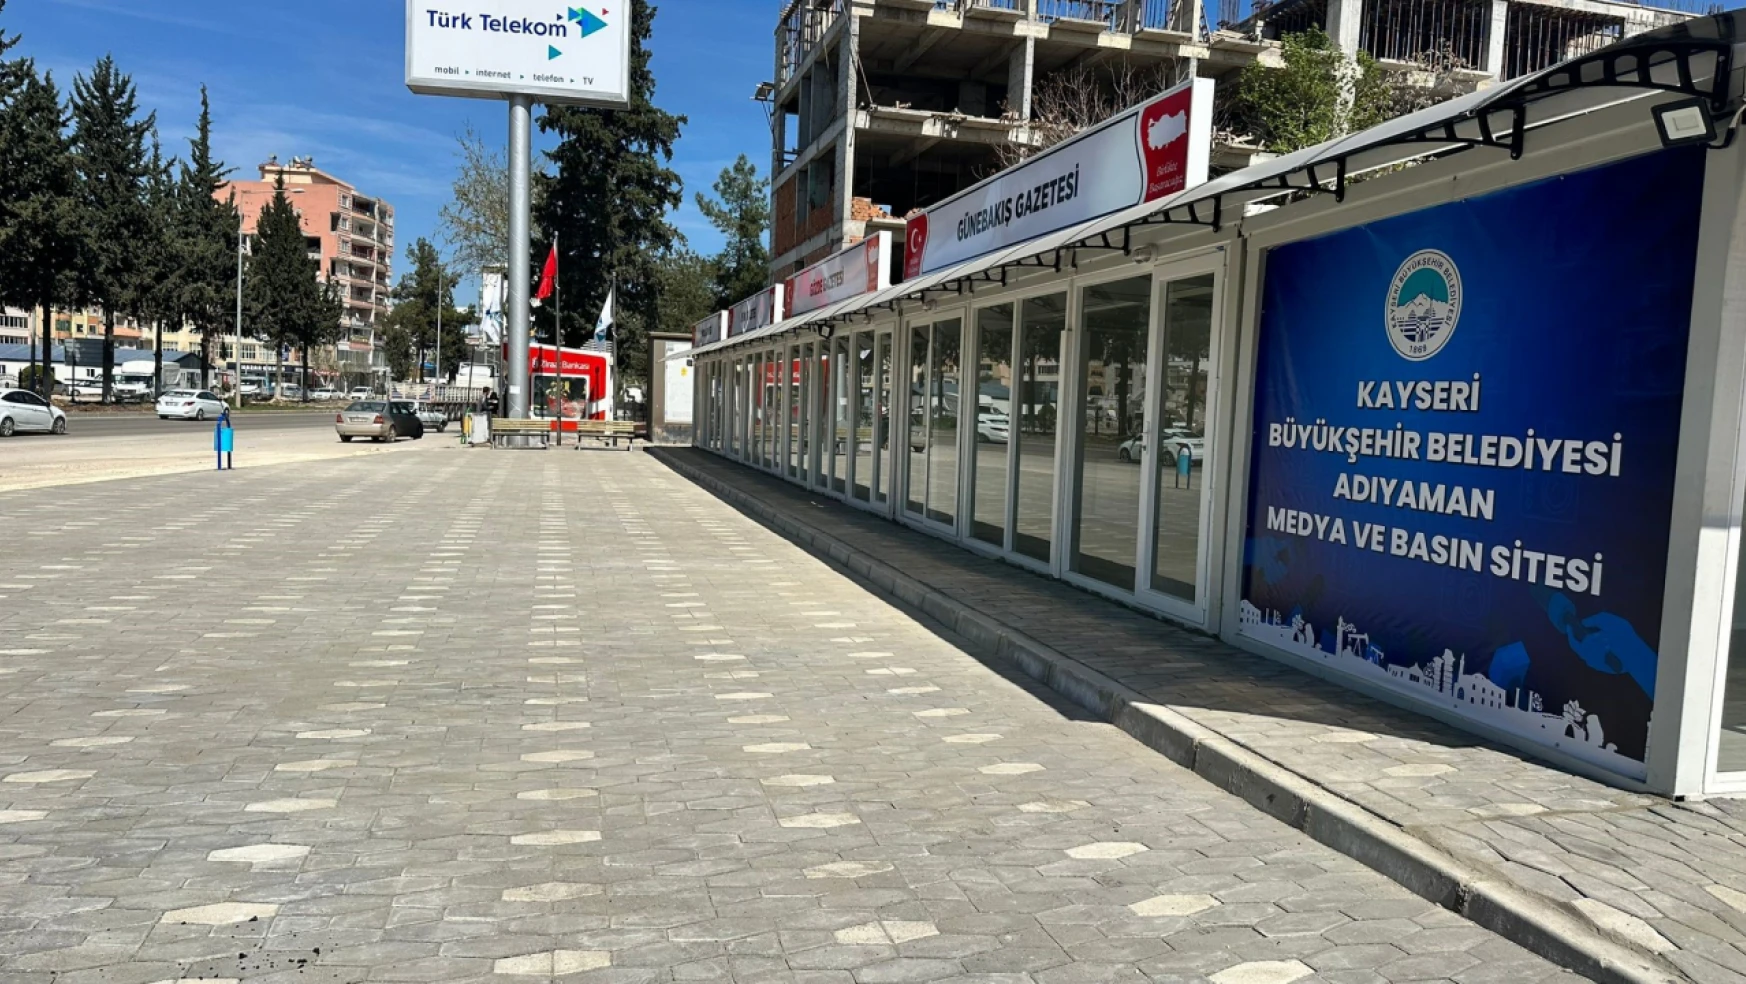 Kayseri Büyükşehir'in Adıyaman Konteyner Basın Sitesi tamamlandı